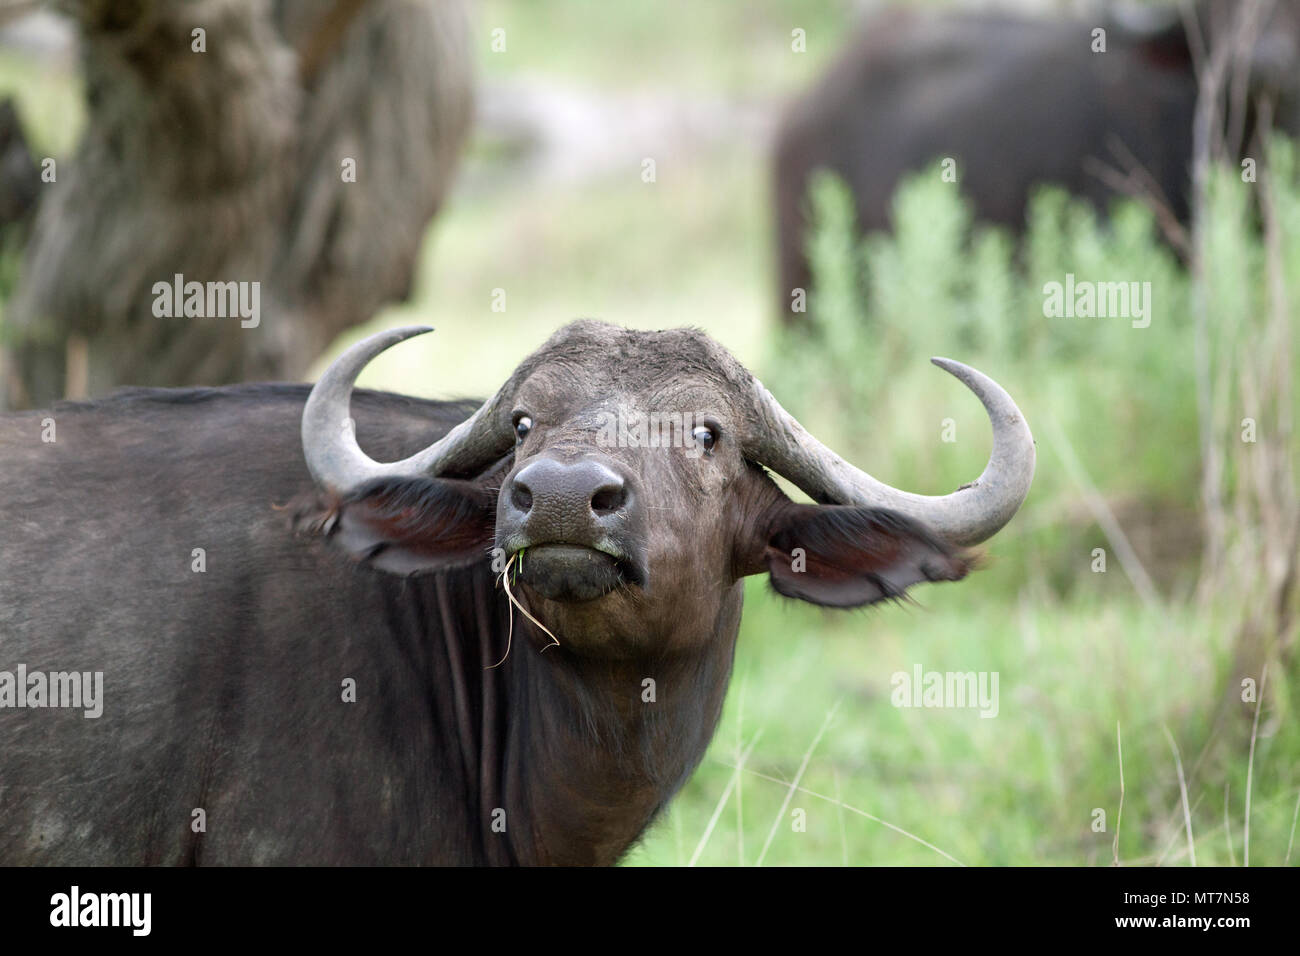 El búfalo africano (Syncerus caffer). Hembra o vaca. Miope, mostrando la esclerótica de los ojos. El sentido del olfato en buen estado. Comer gruesas, el césped viejo y, al hacerlo, revelando los pastos más cortos para los pequeños herbívoros.​ Foto de stock